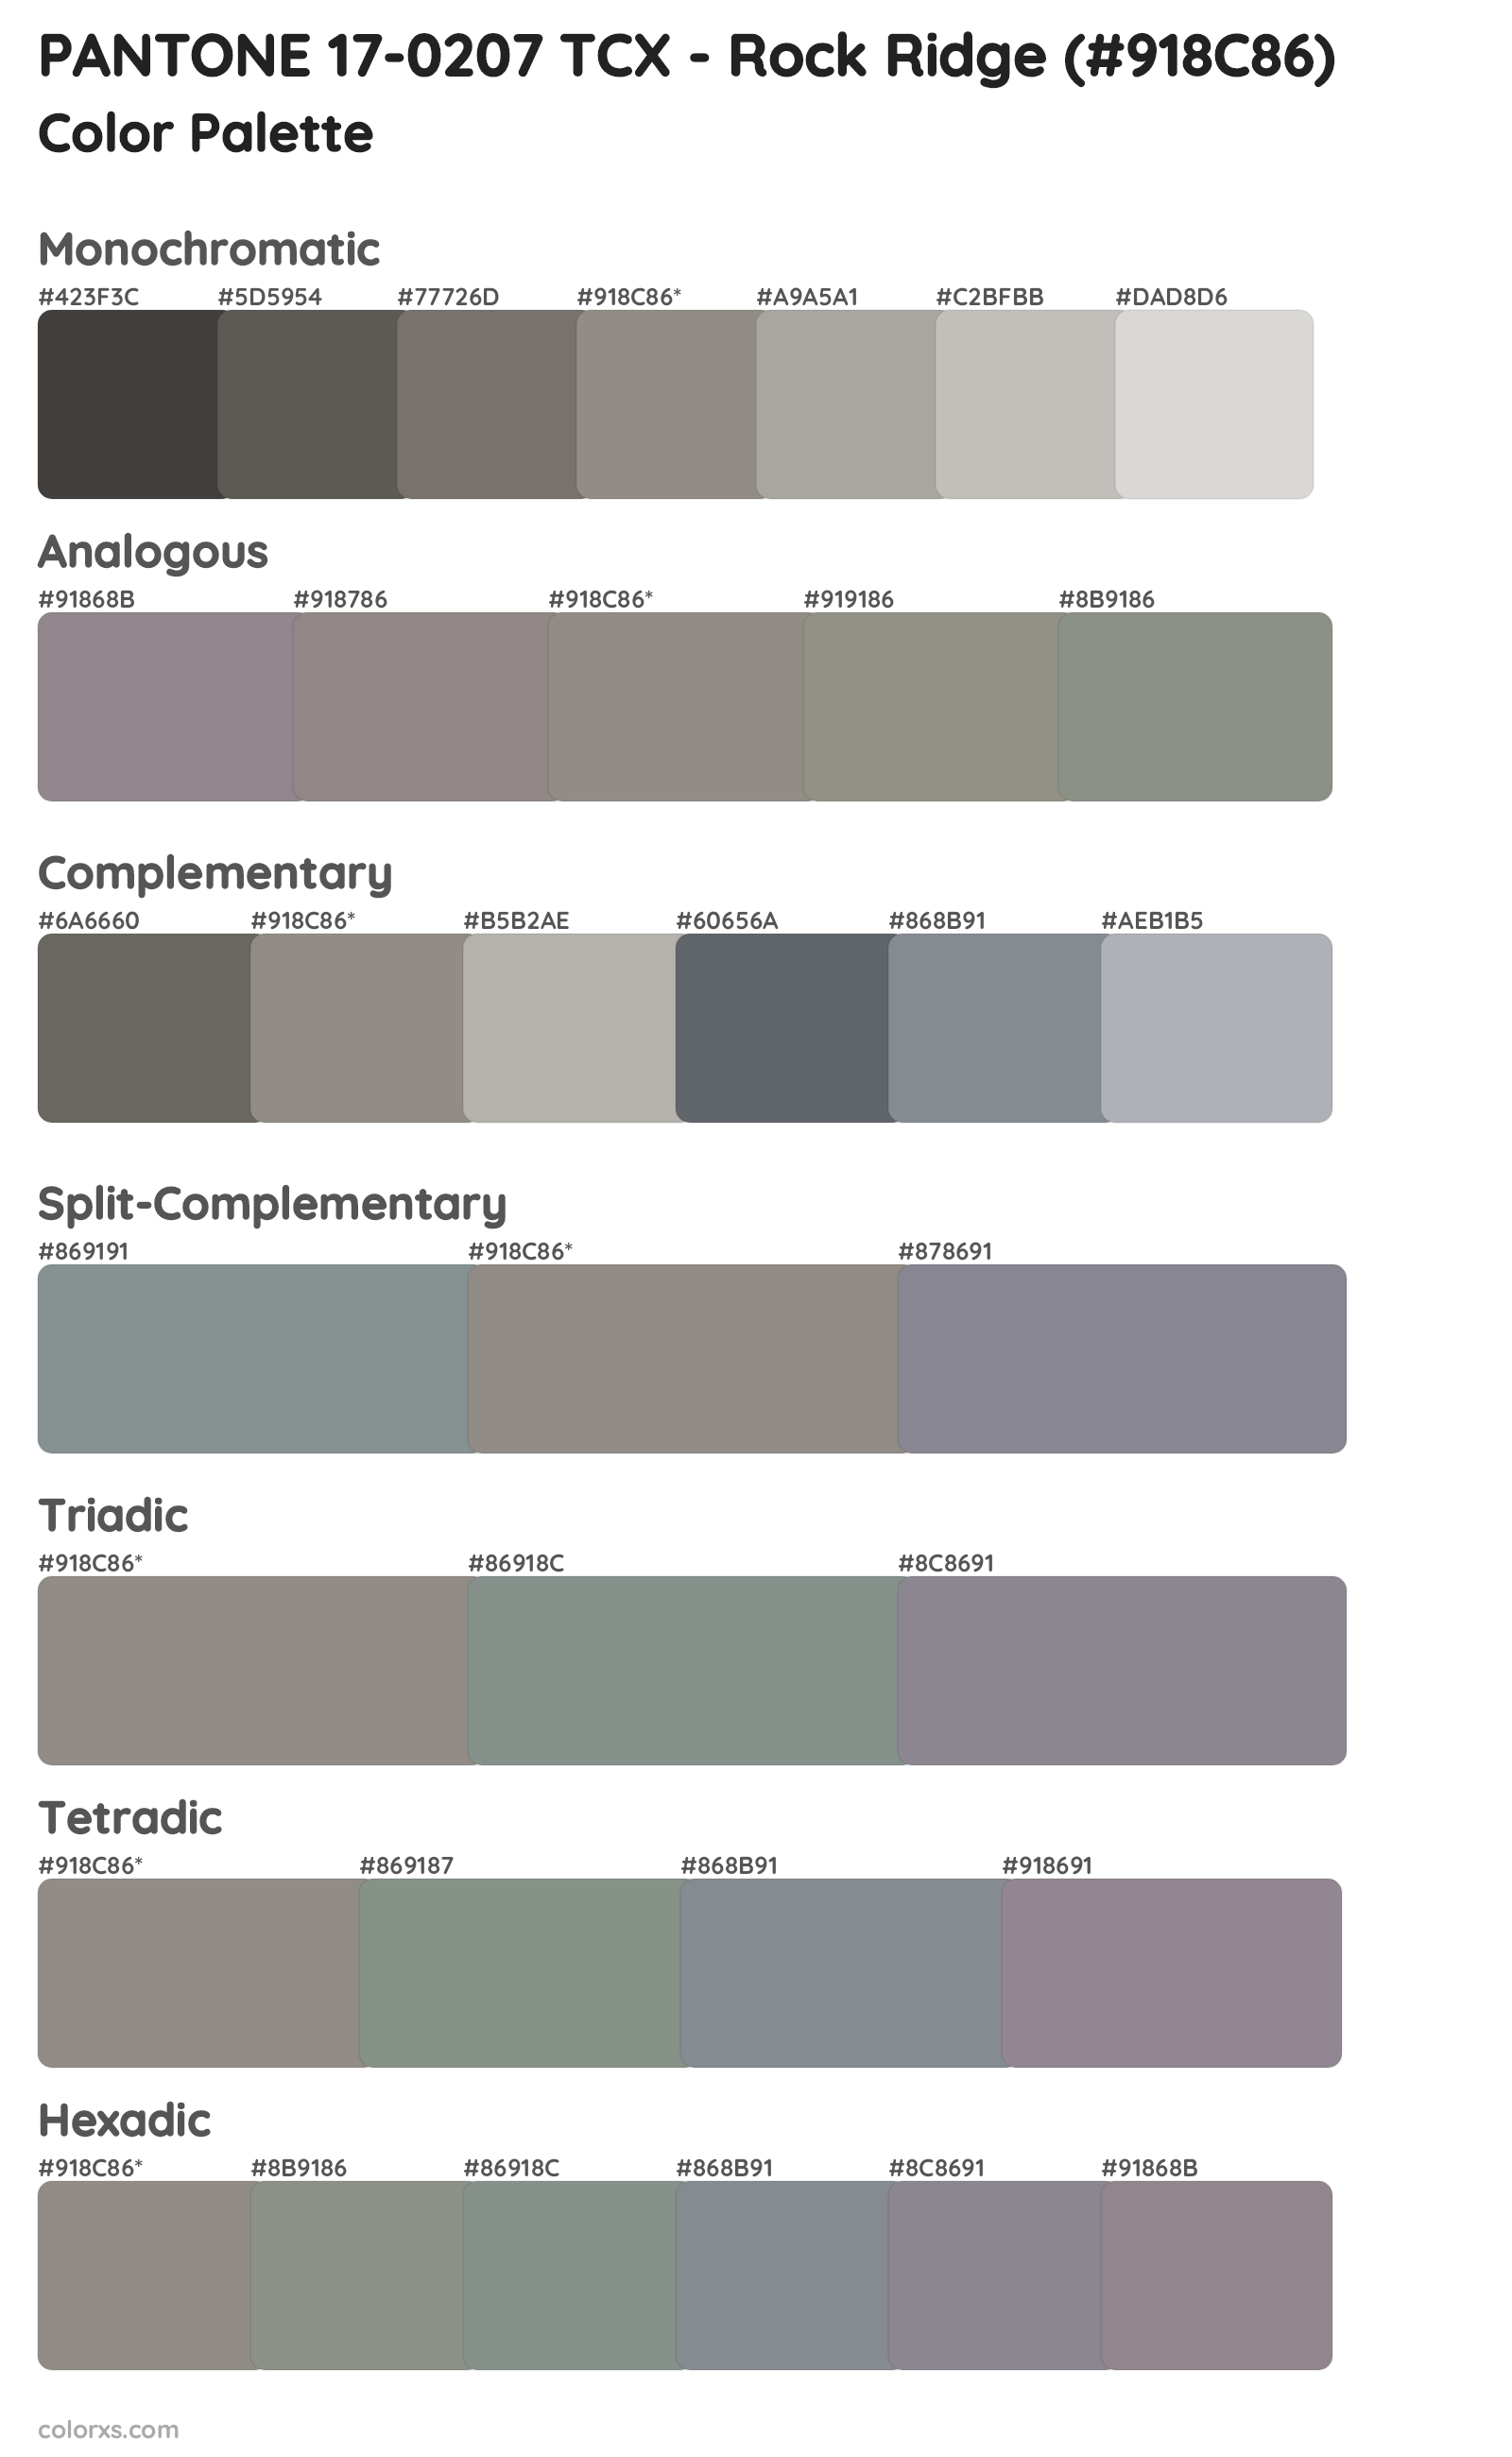 PANTONE 17-0207 TCX - Rock Ridge Color Scheme Palettes